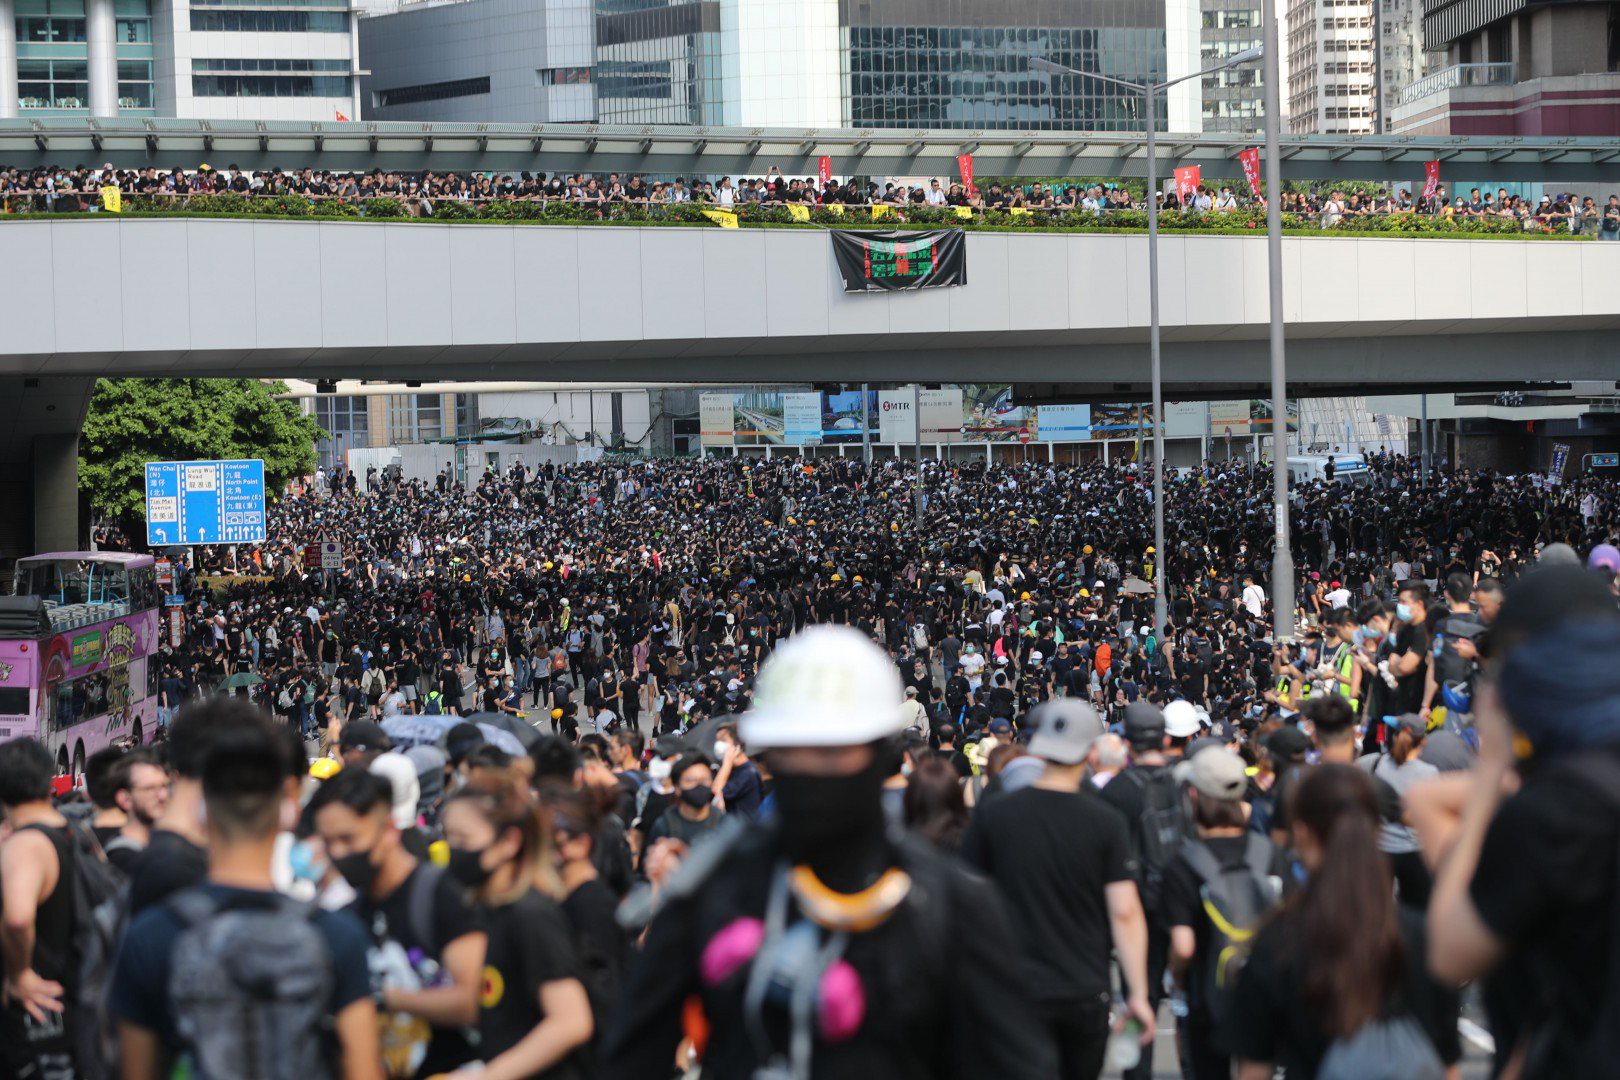 Hồng Kông “tê liệt” vì biểu tình lớn chưa từng thấy - Ảnh 2.